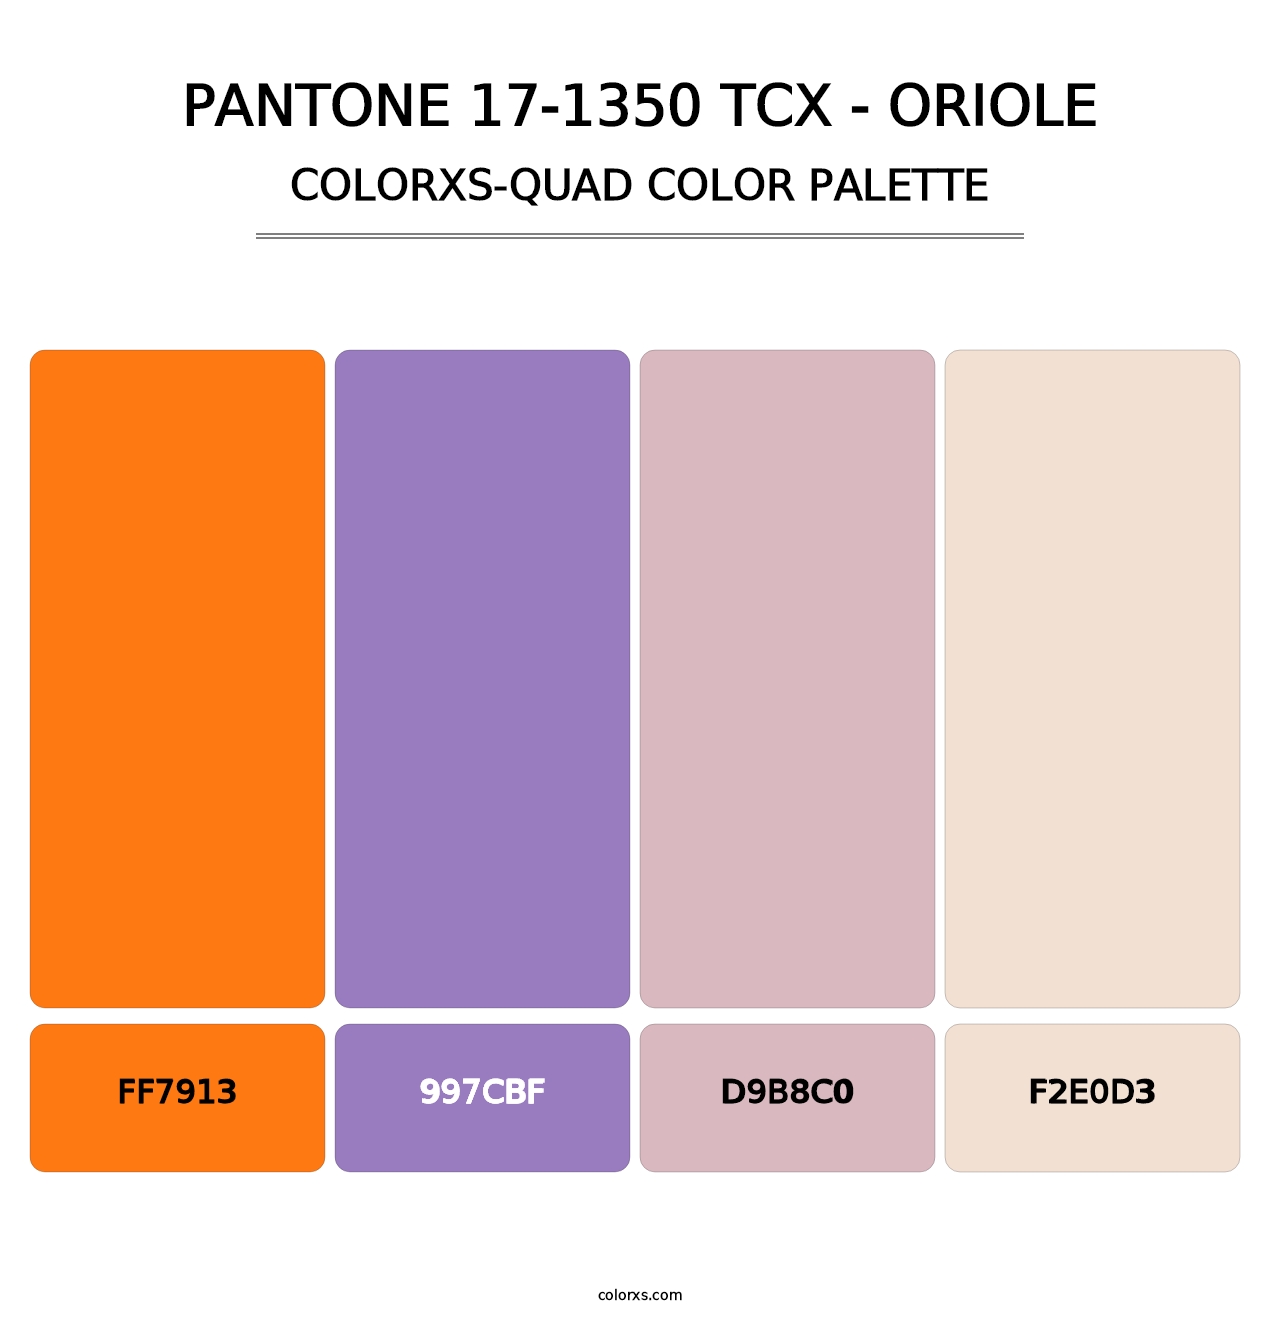 PANTONE 17-1350 TCX - Oriole - Colorxs Quad Palette